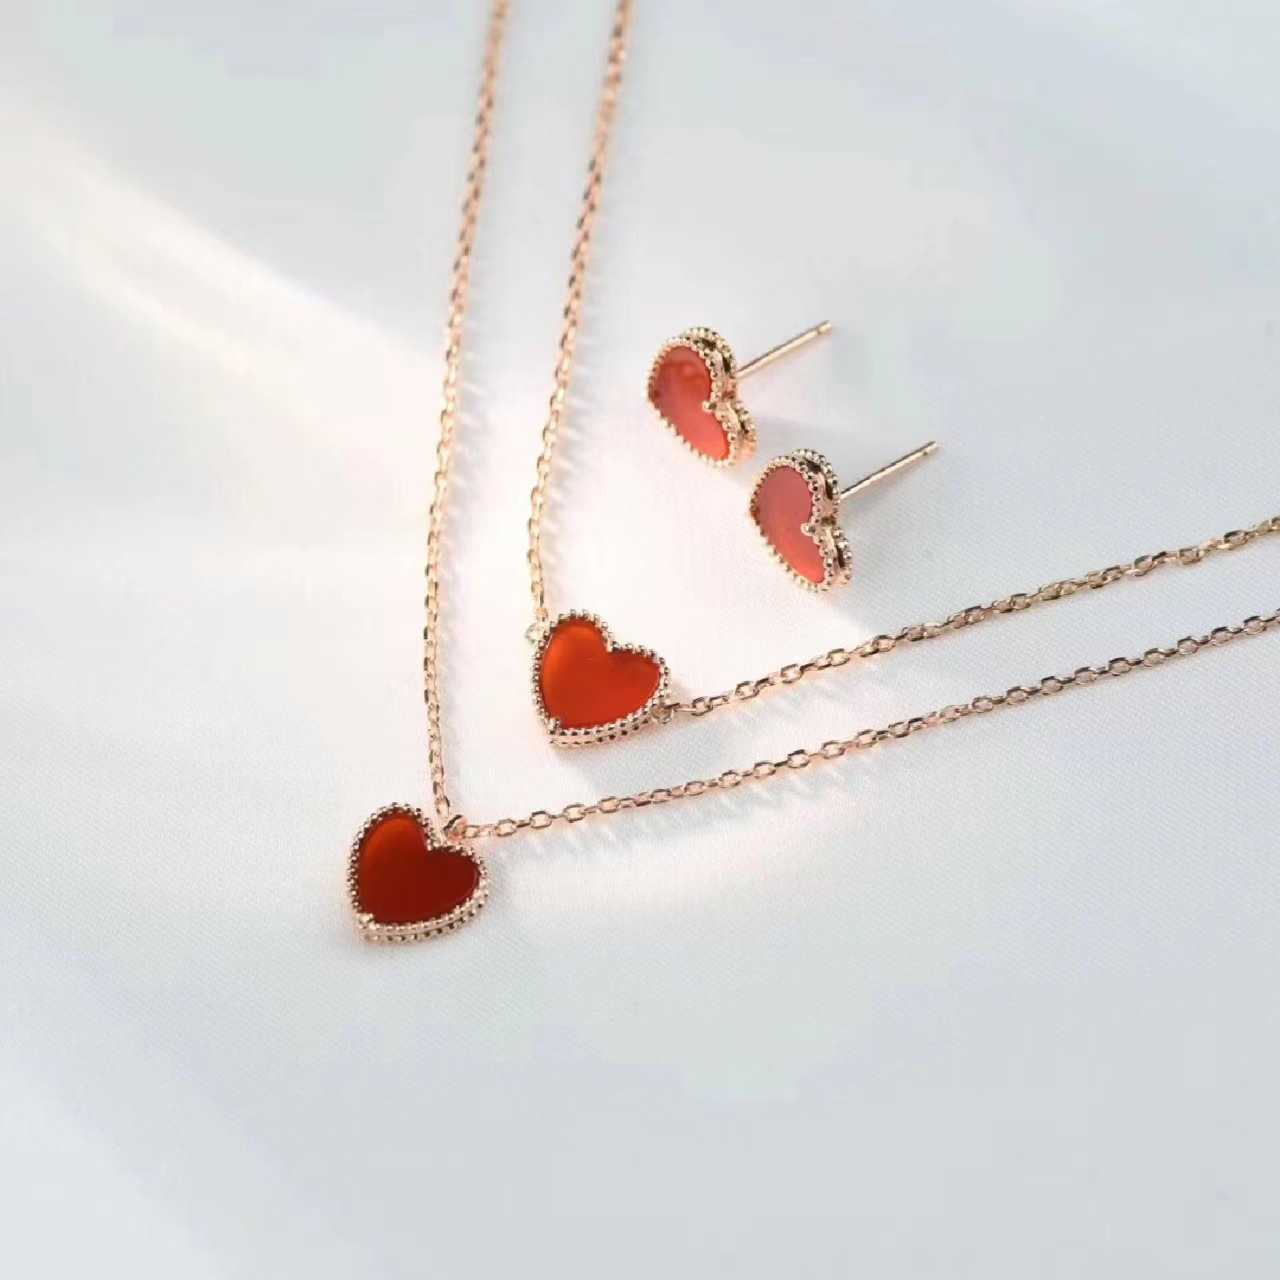 Colar V 925 prata esterlina Fanjia pequeno colar de coração vermelho banhado com brincos de coração em forma de coração em ouro rosa 18K pulseira de coração de pêssego versão alta